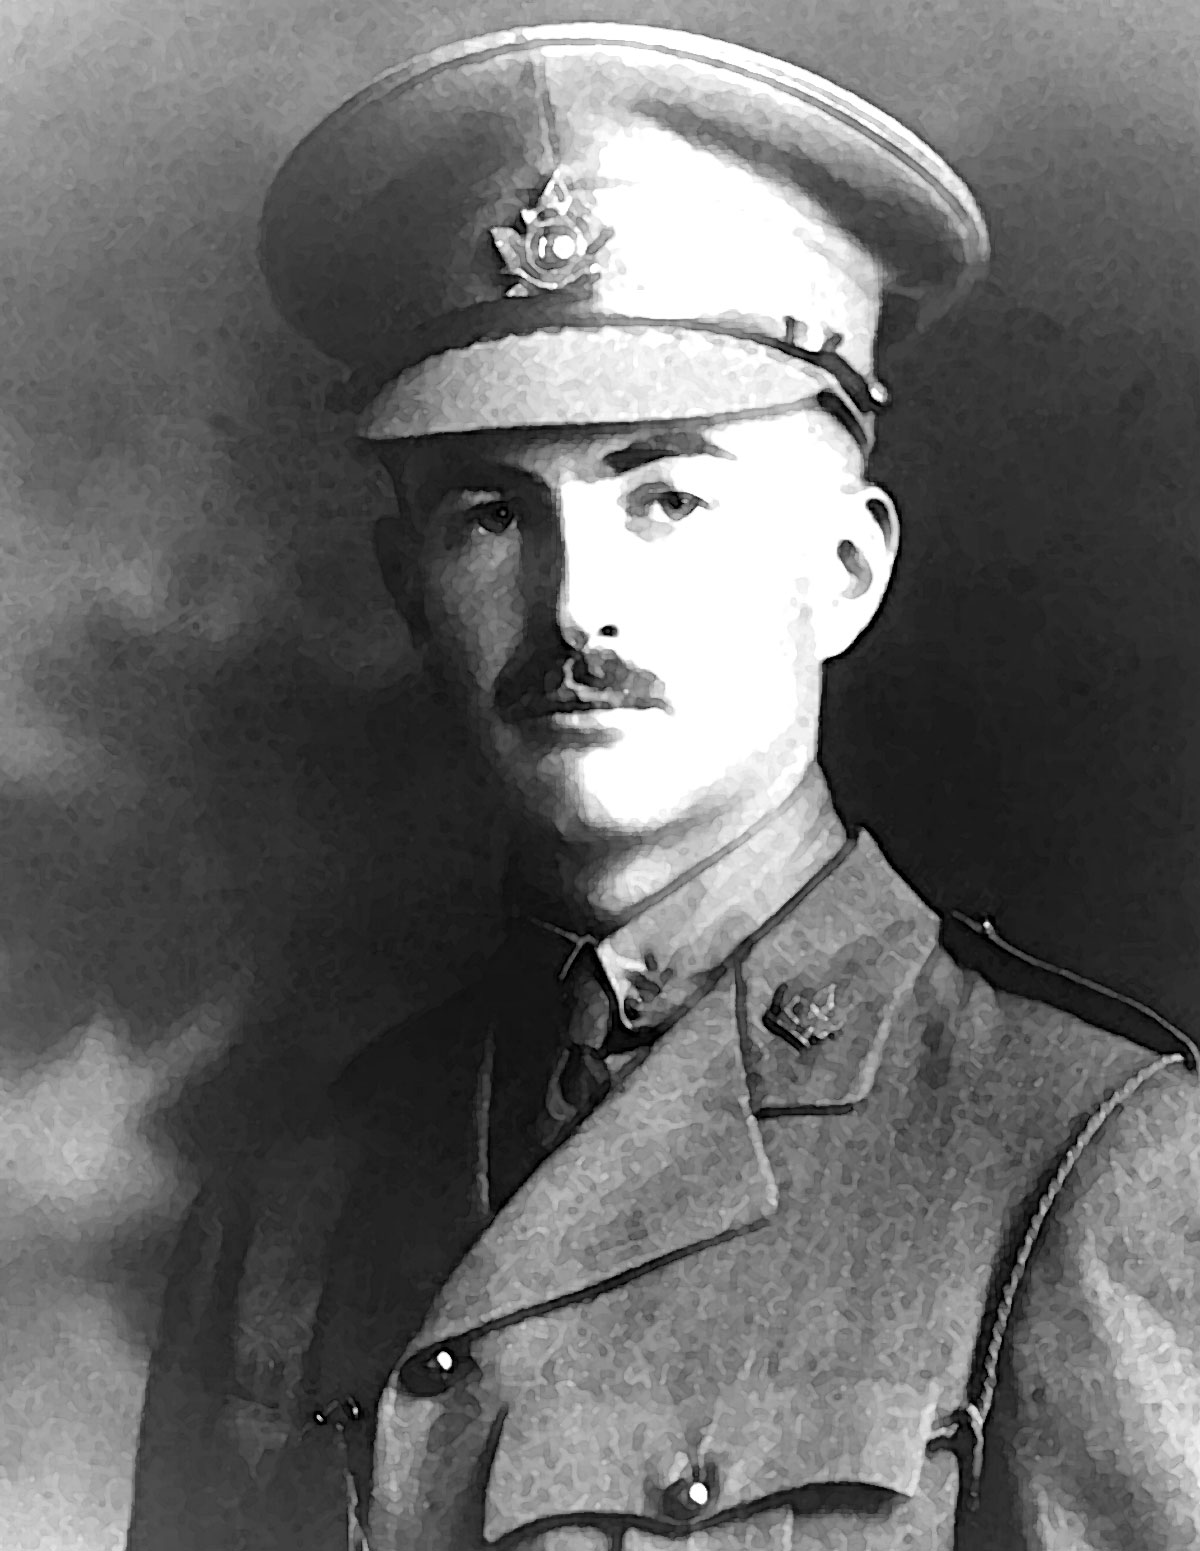 Lt. Wallace Lloyd Algie